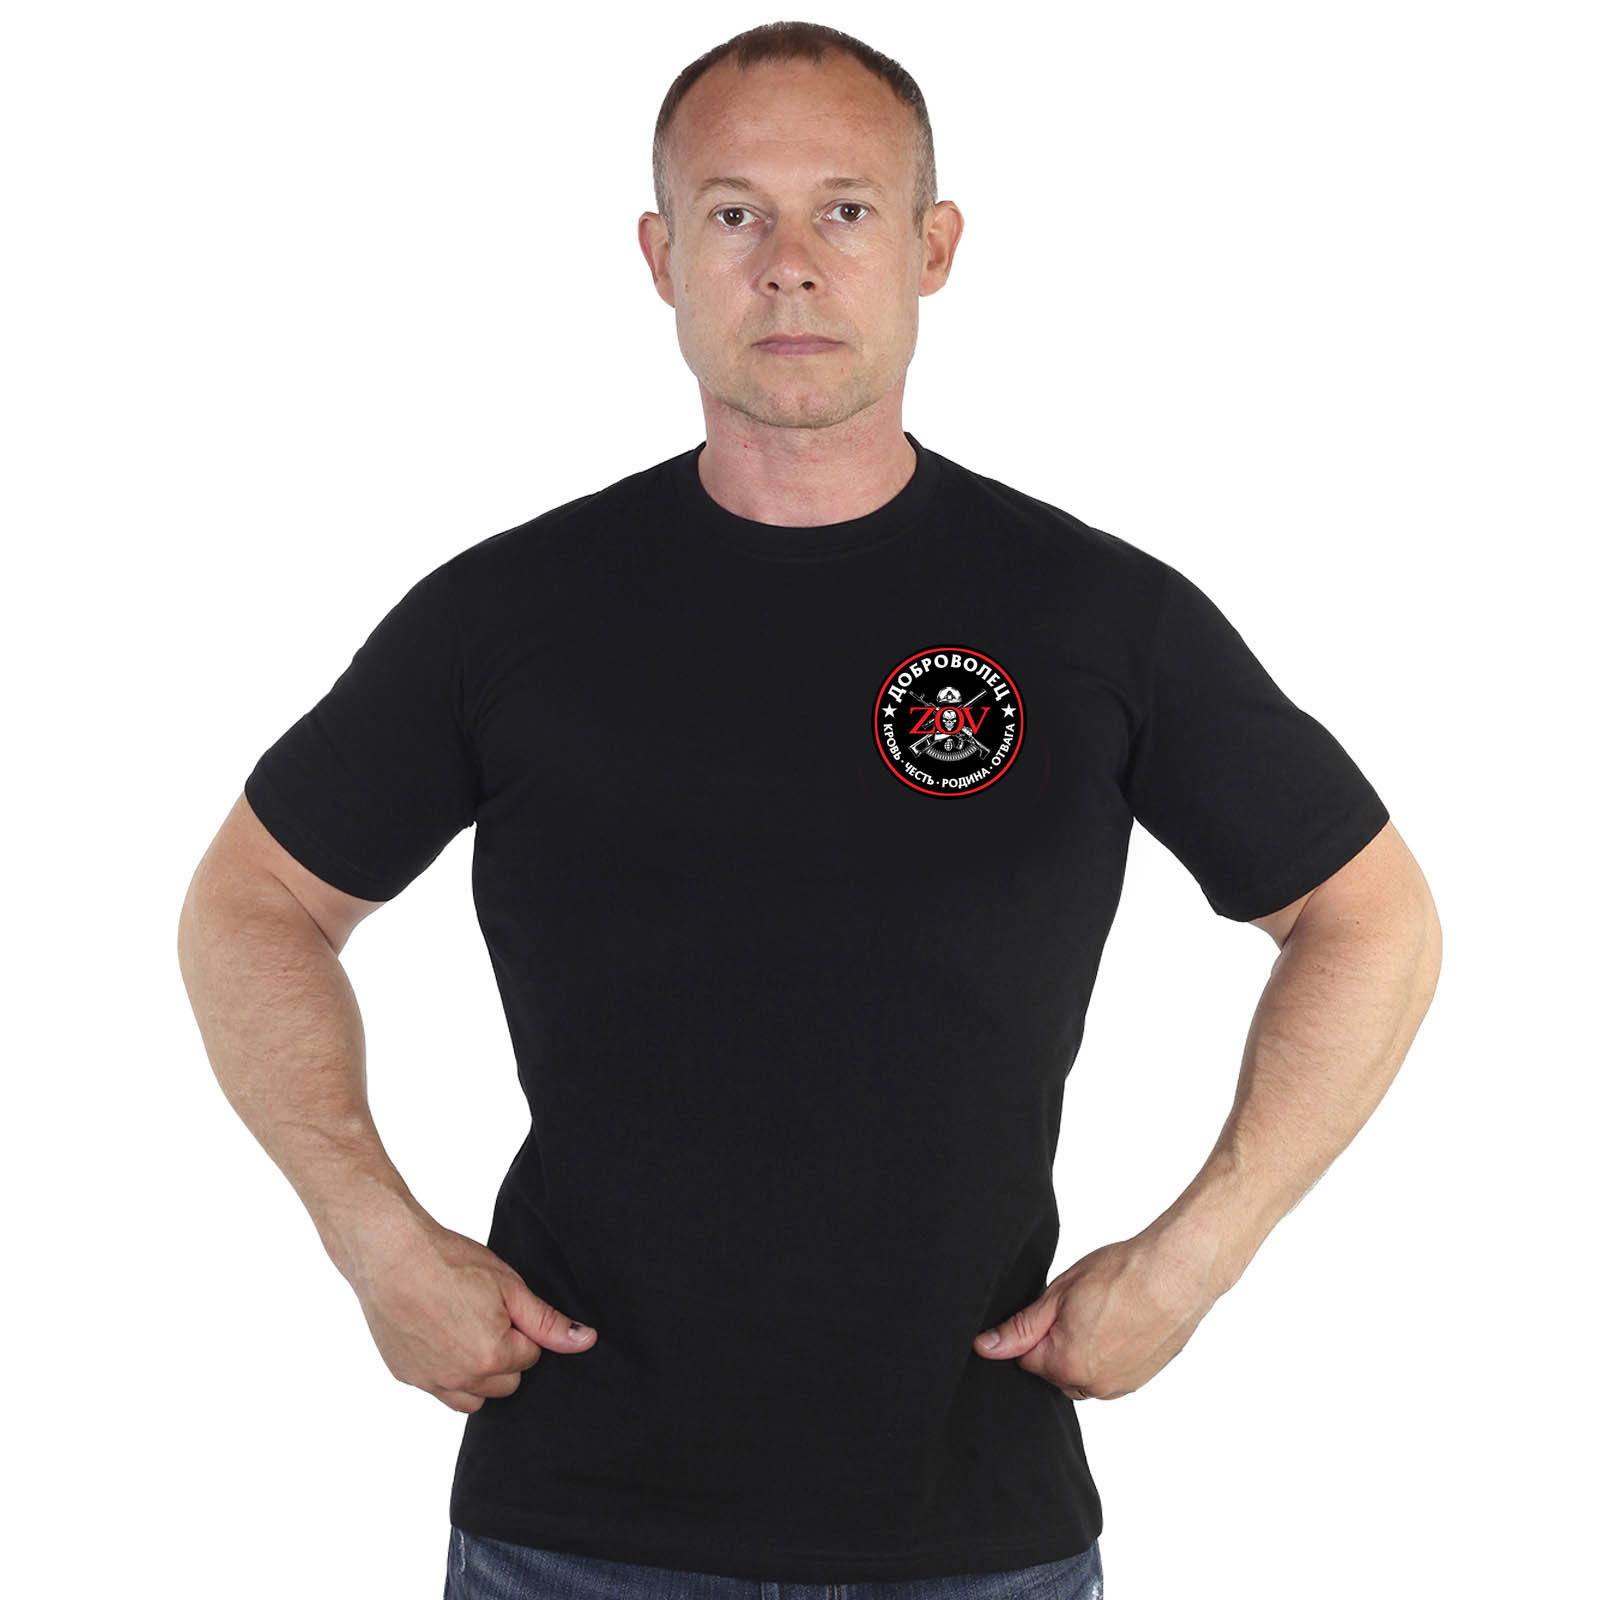 Купить мужскую трикотажную футболку с термотрансфером Доброволец ZOV выгодно